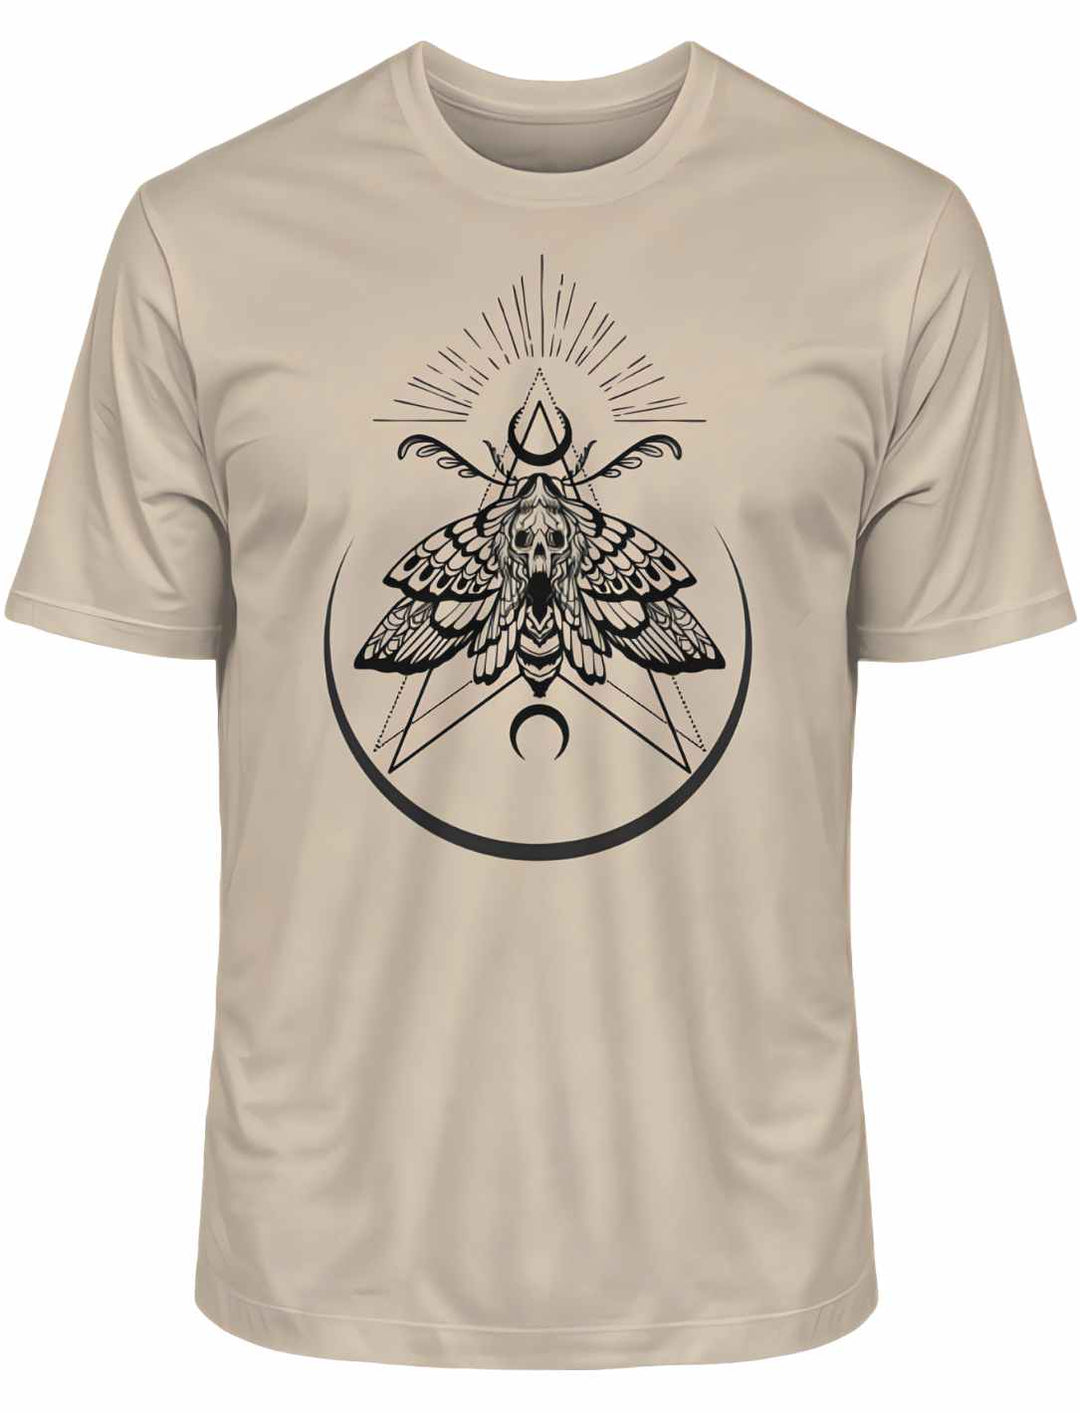 Desert Dust T-Shirt 'Lichtbringer der Verwandlung' mit künstlerischem Nachtfalter-Design, liegend auf weißem Hintergrund